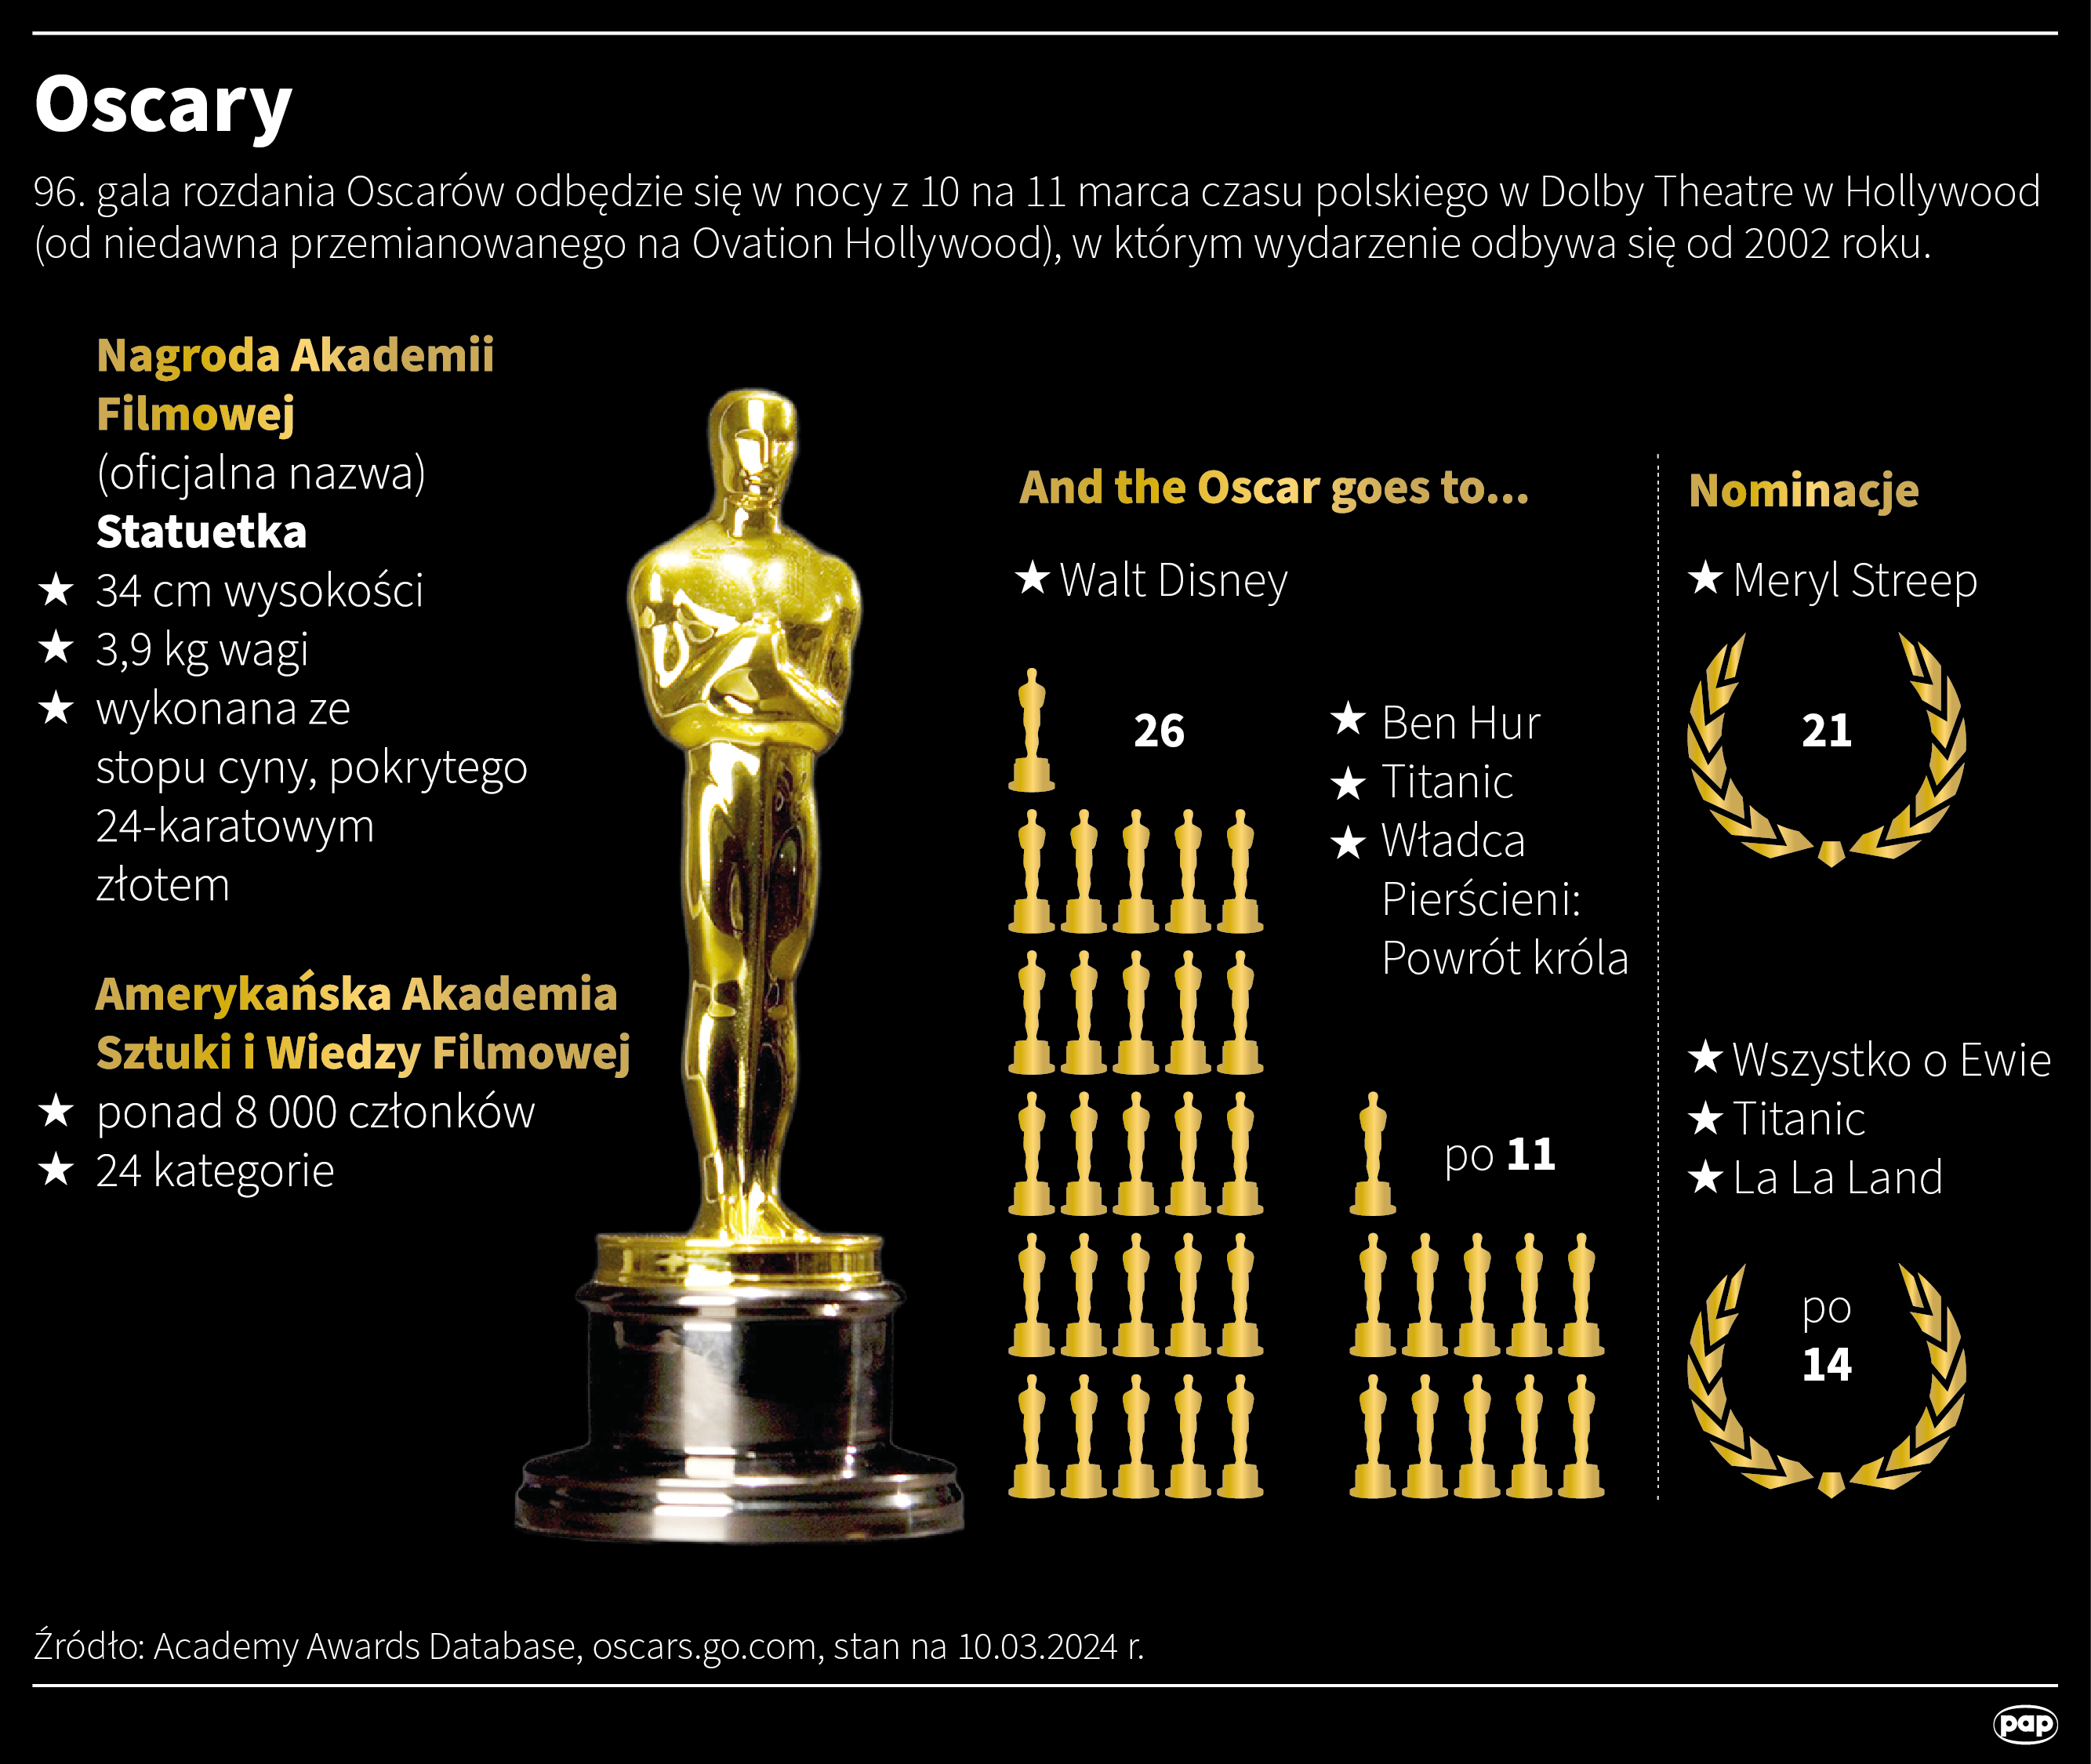 Uroczystość wręczenia 96. nagród Amerykańskiej Akademii Sztuki i Wiedzy Filmowej odbędzie się w hollywoodzkim Dolby Theatre. Nazwiska laureatów ogłoszą m.in. Al Pacino, Forest Whitaker, Ramy Youssef, Ariana Grande i Zendaya. Gospodarzem uroczystości będzie Jimmy Kimmel.